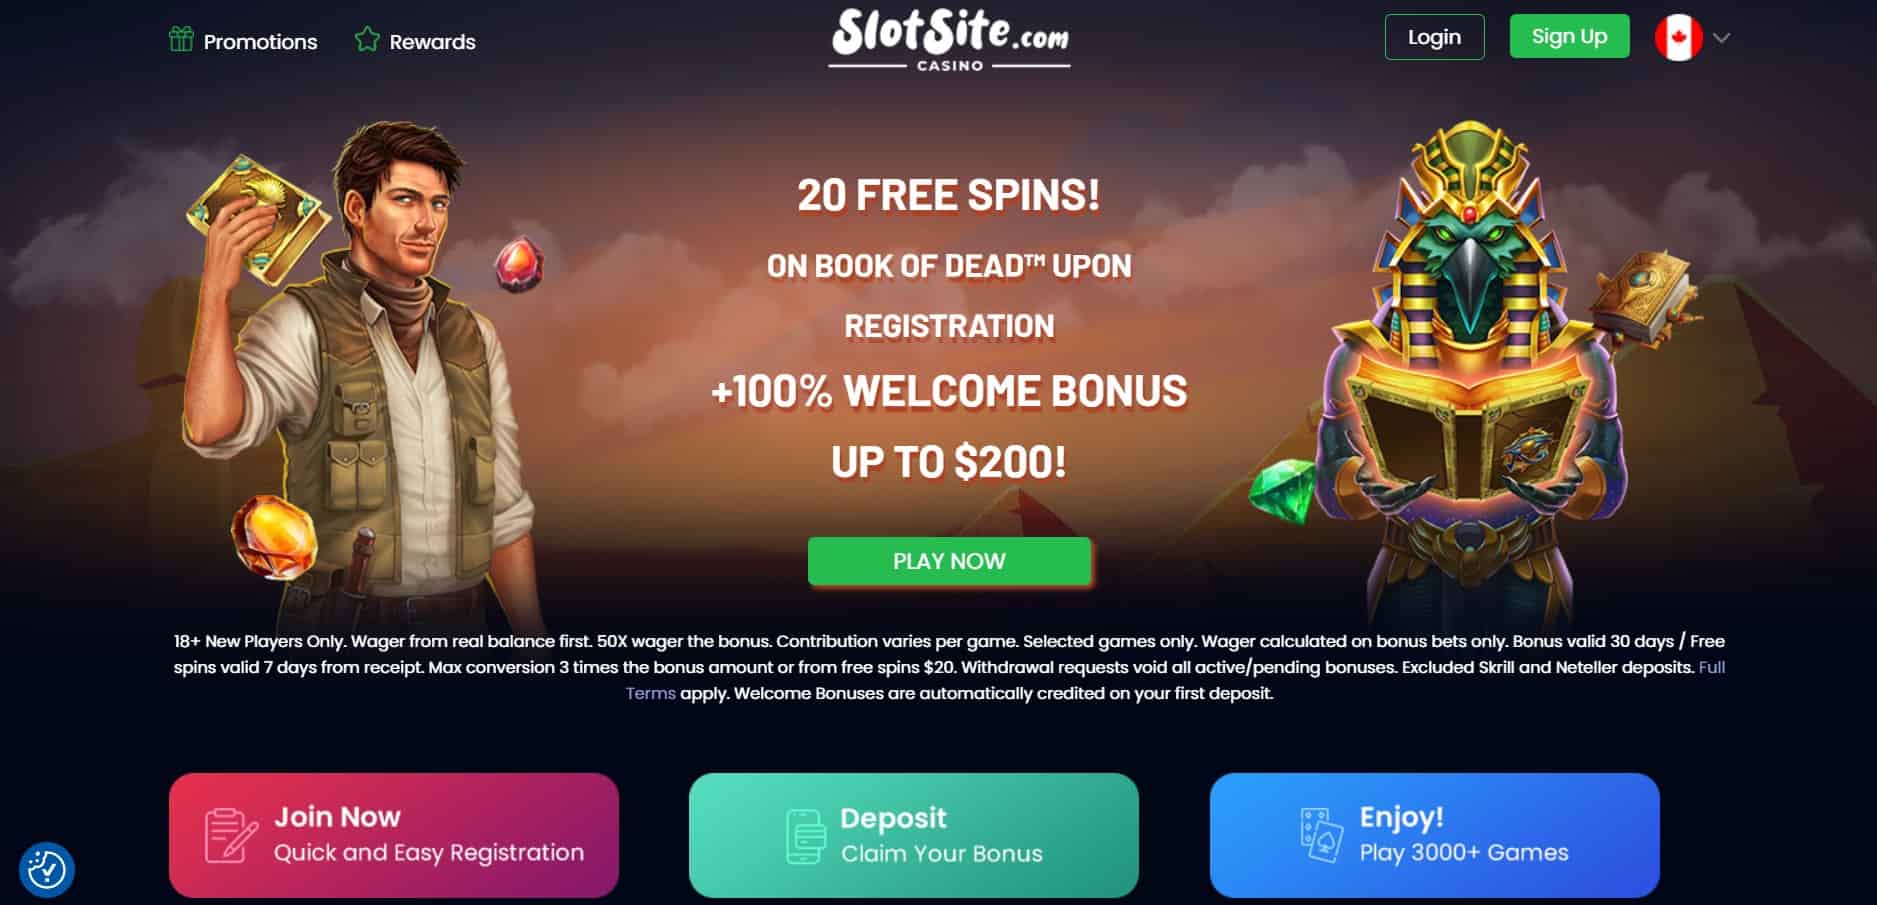 slotsite casino main page